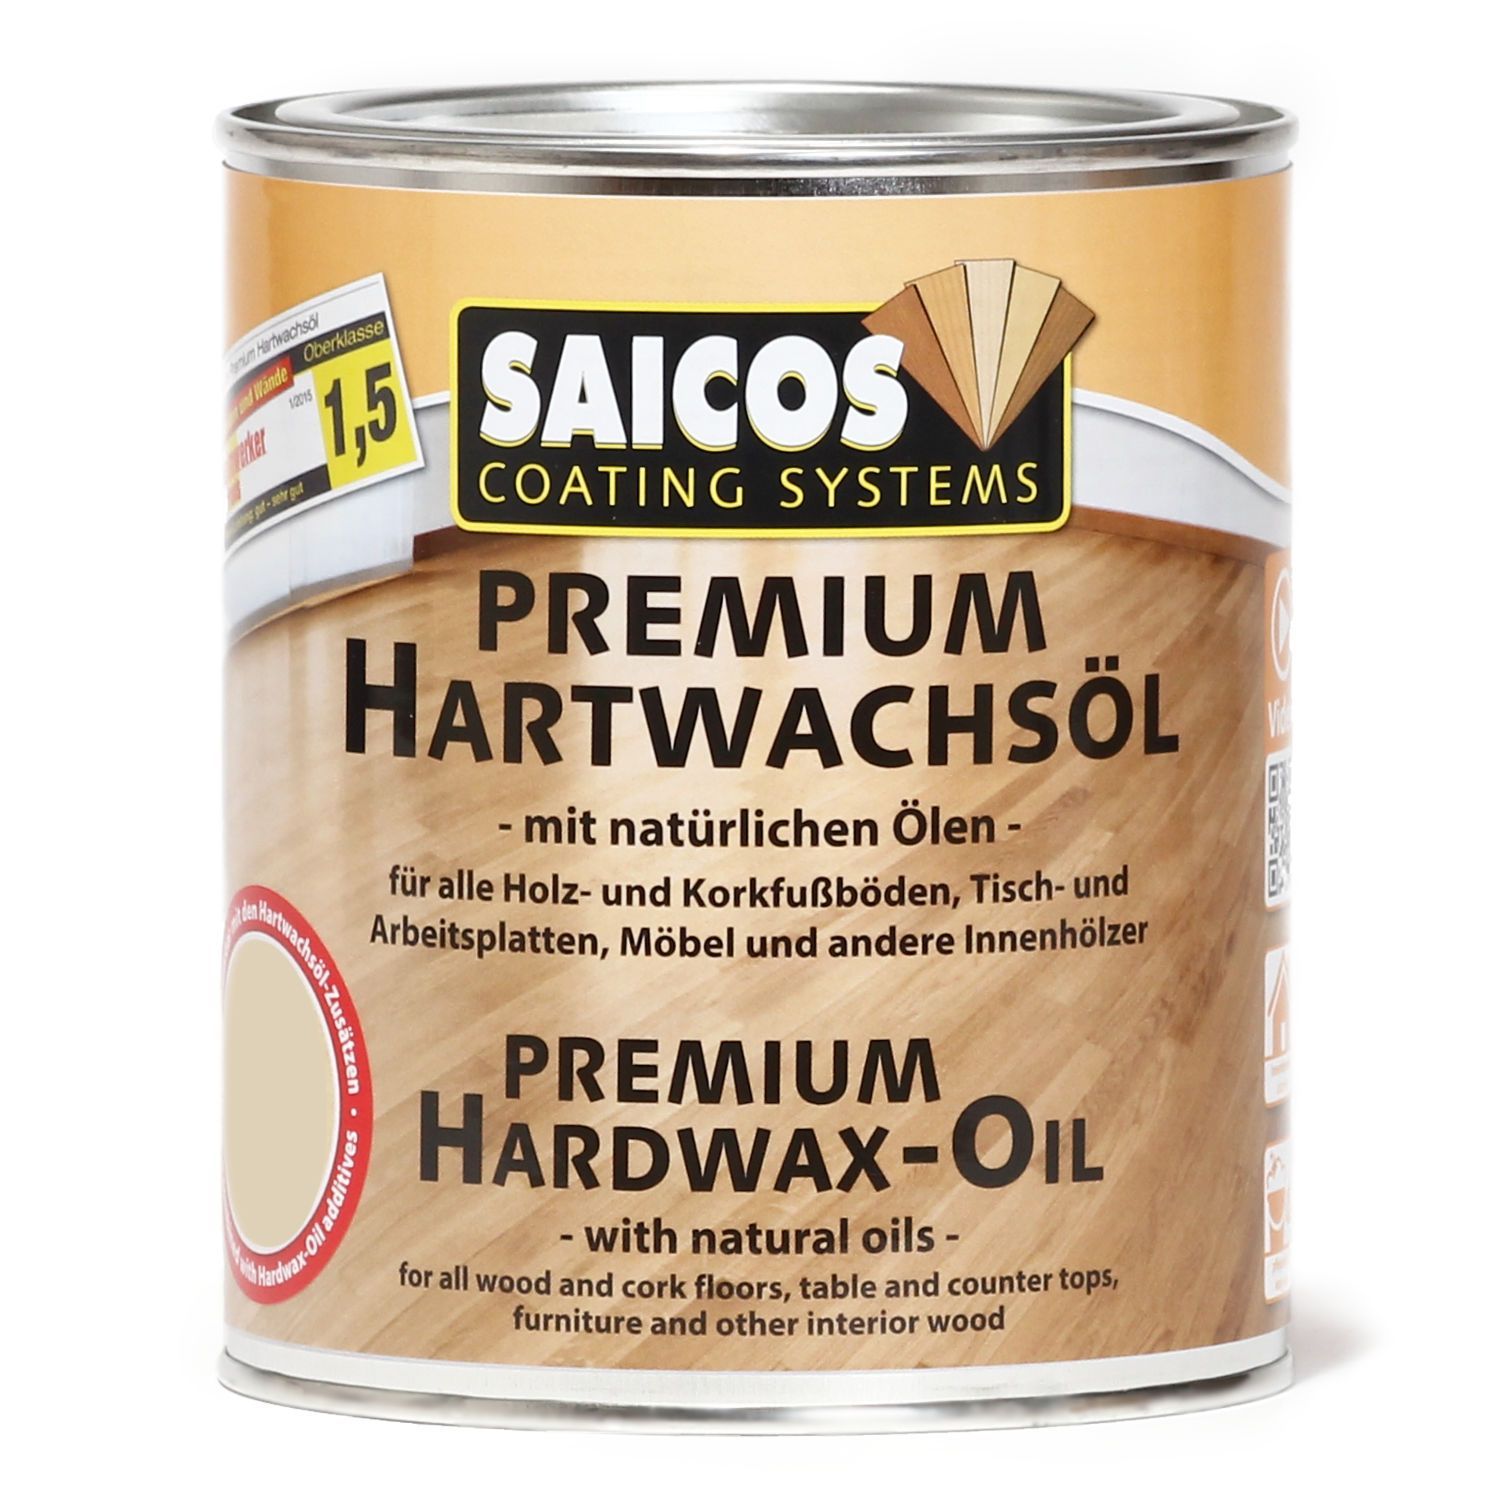 Saicos Hartwachsol Premium 3381